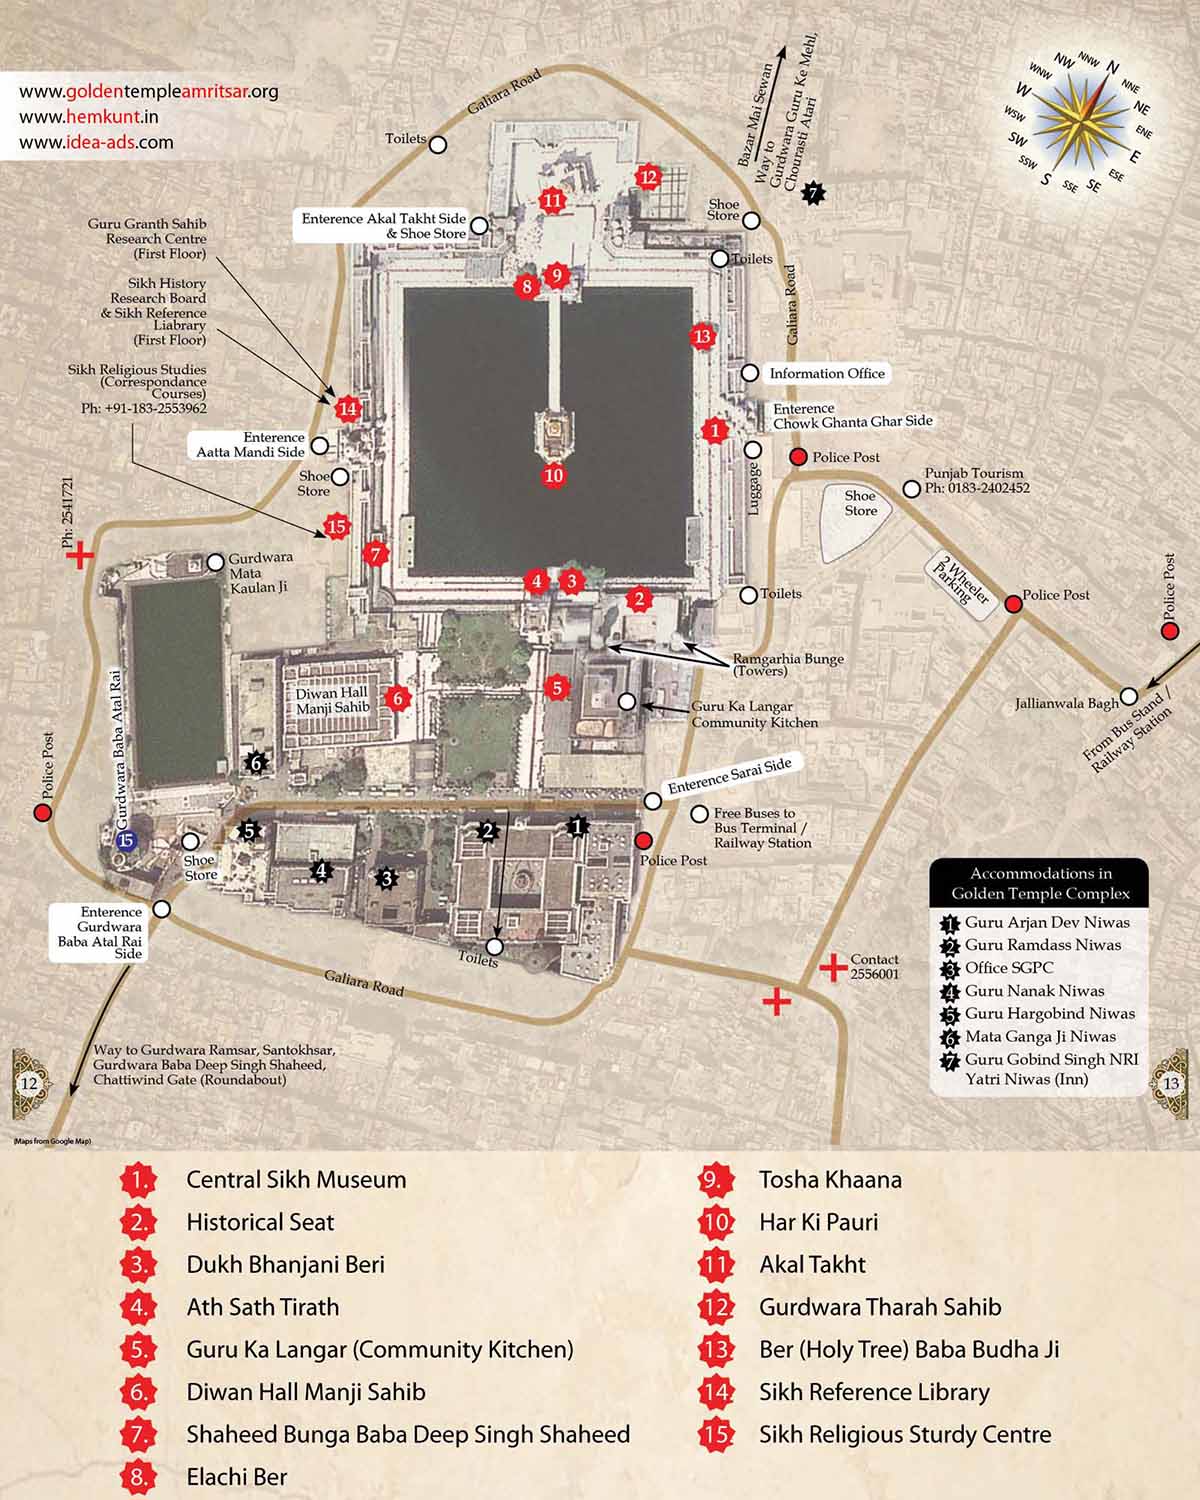 План - схема храмового комплекса Золотого храма в Амритсаре (Индия)